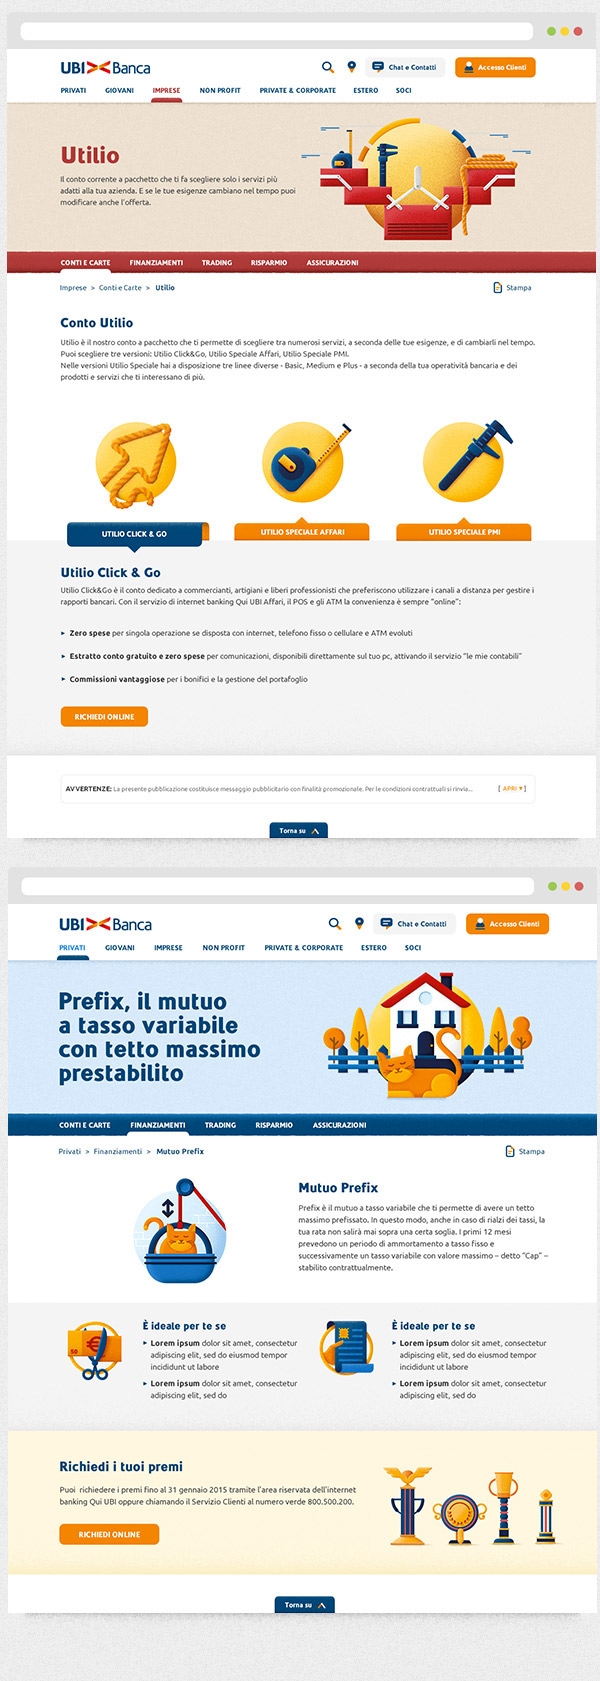 国外网站UBI Banca插图式网页设计